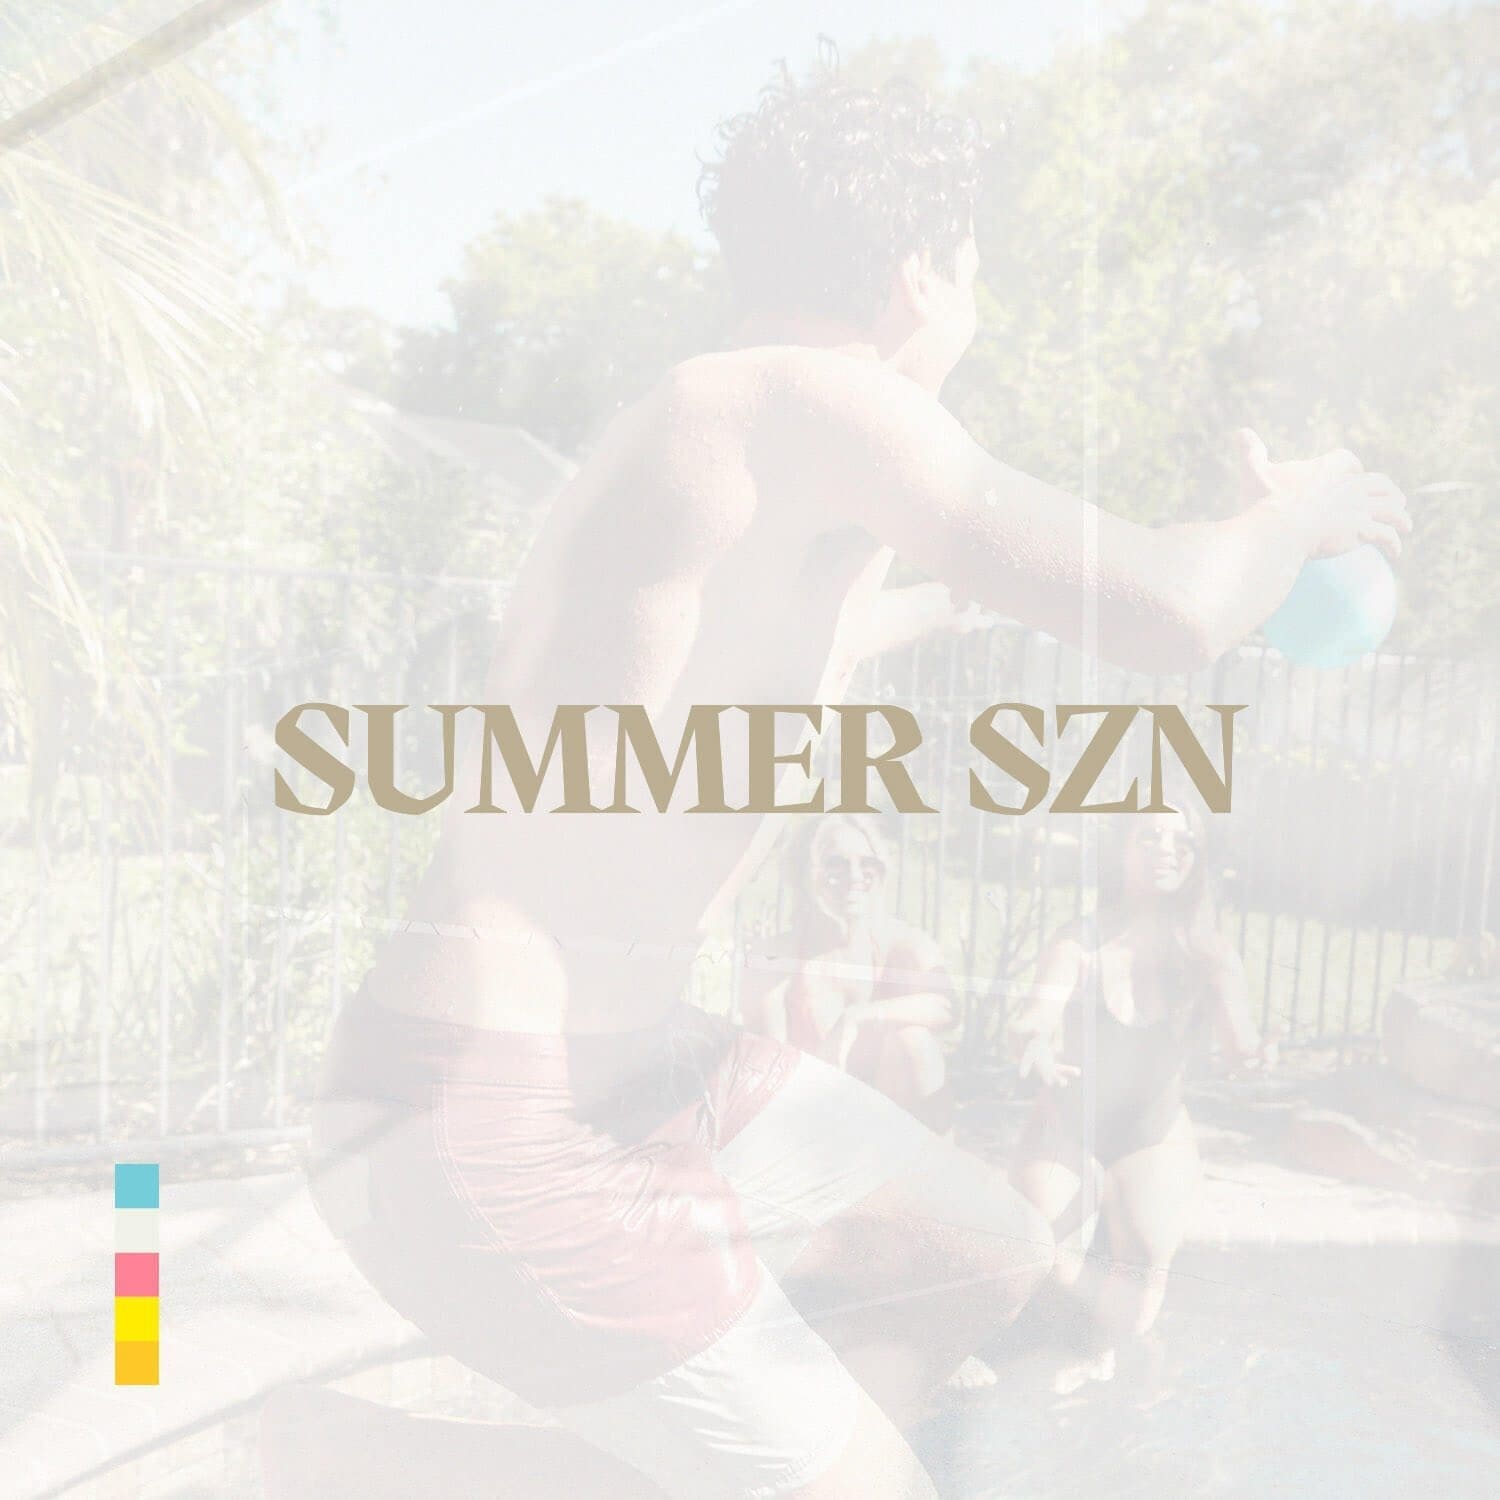 Summer SZN